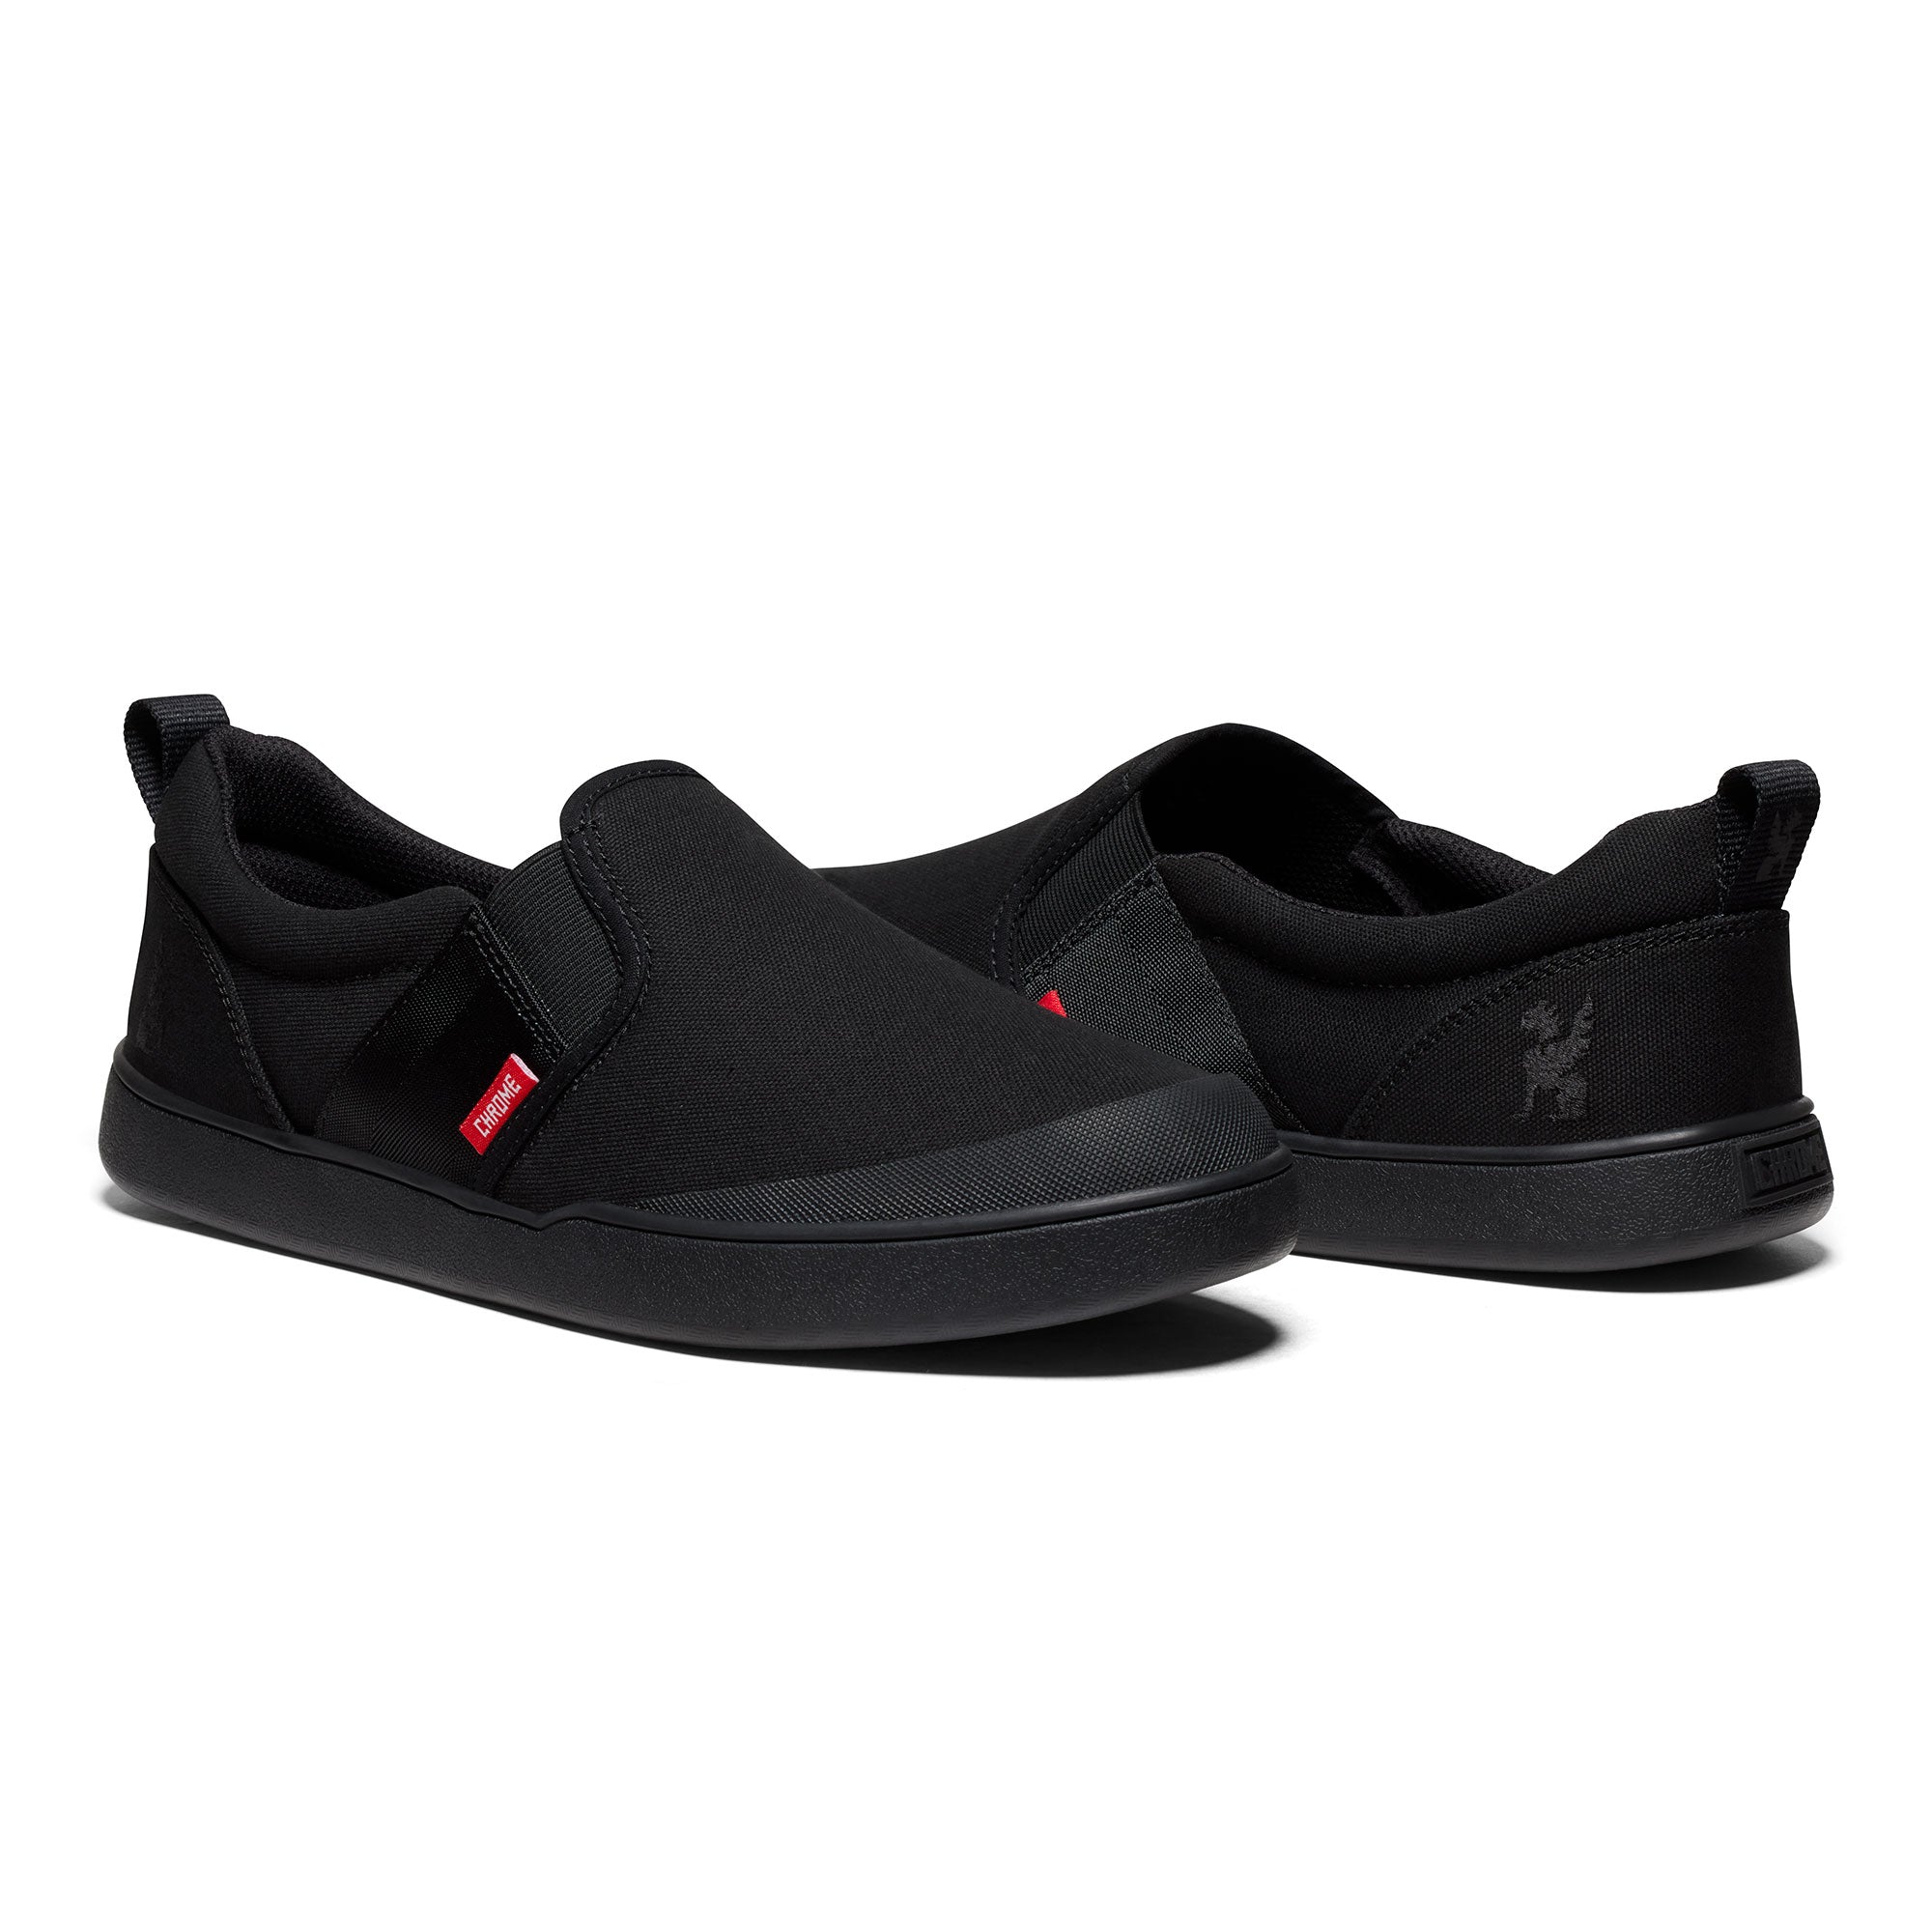 Boyer slip on comfort shoe in black side view #color_black